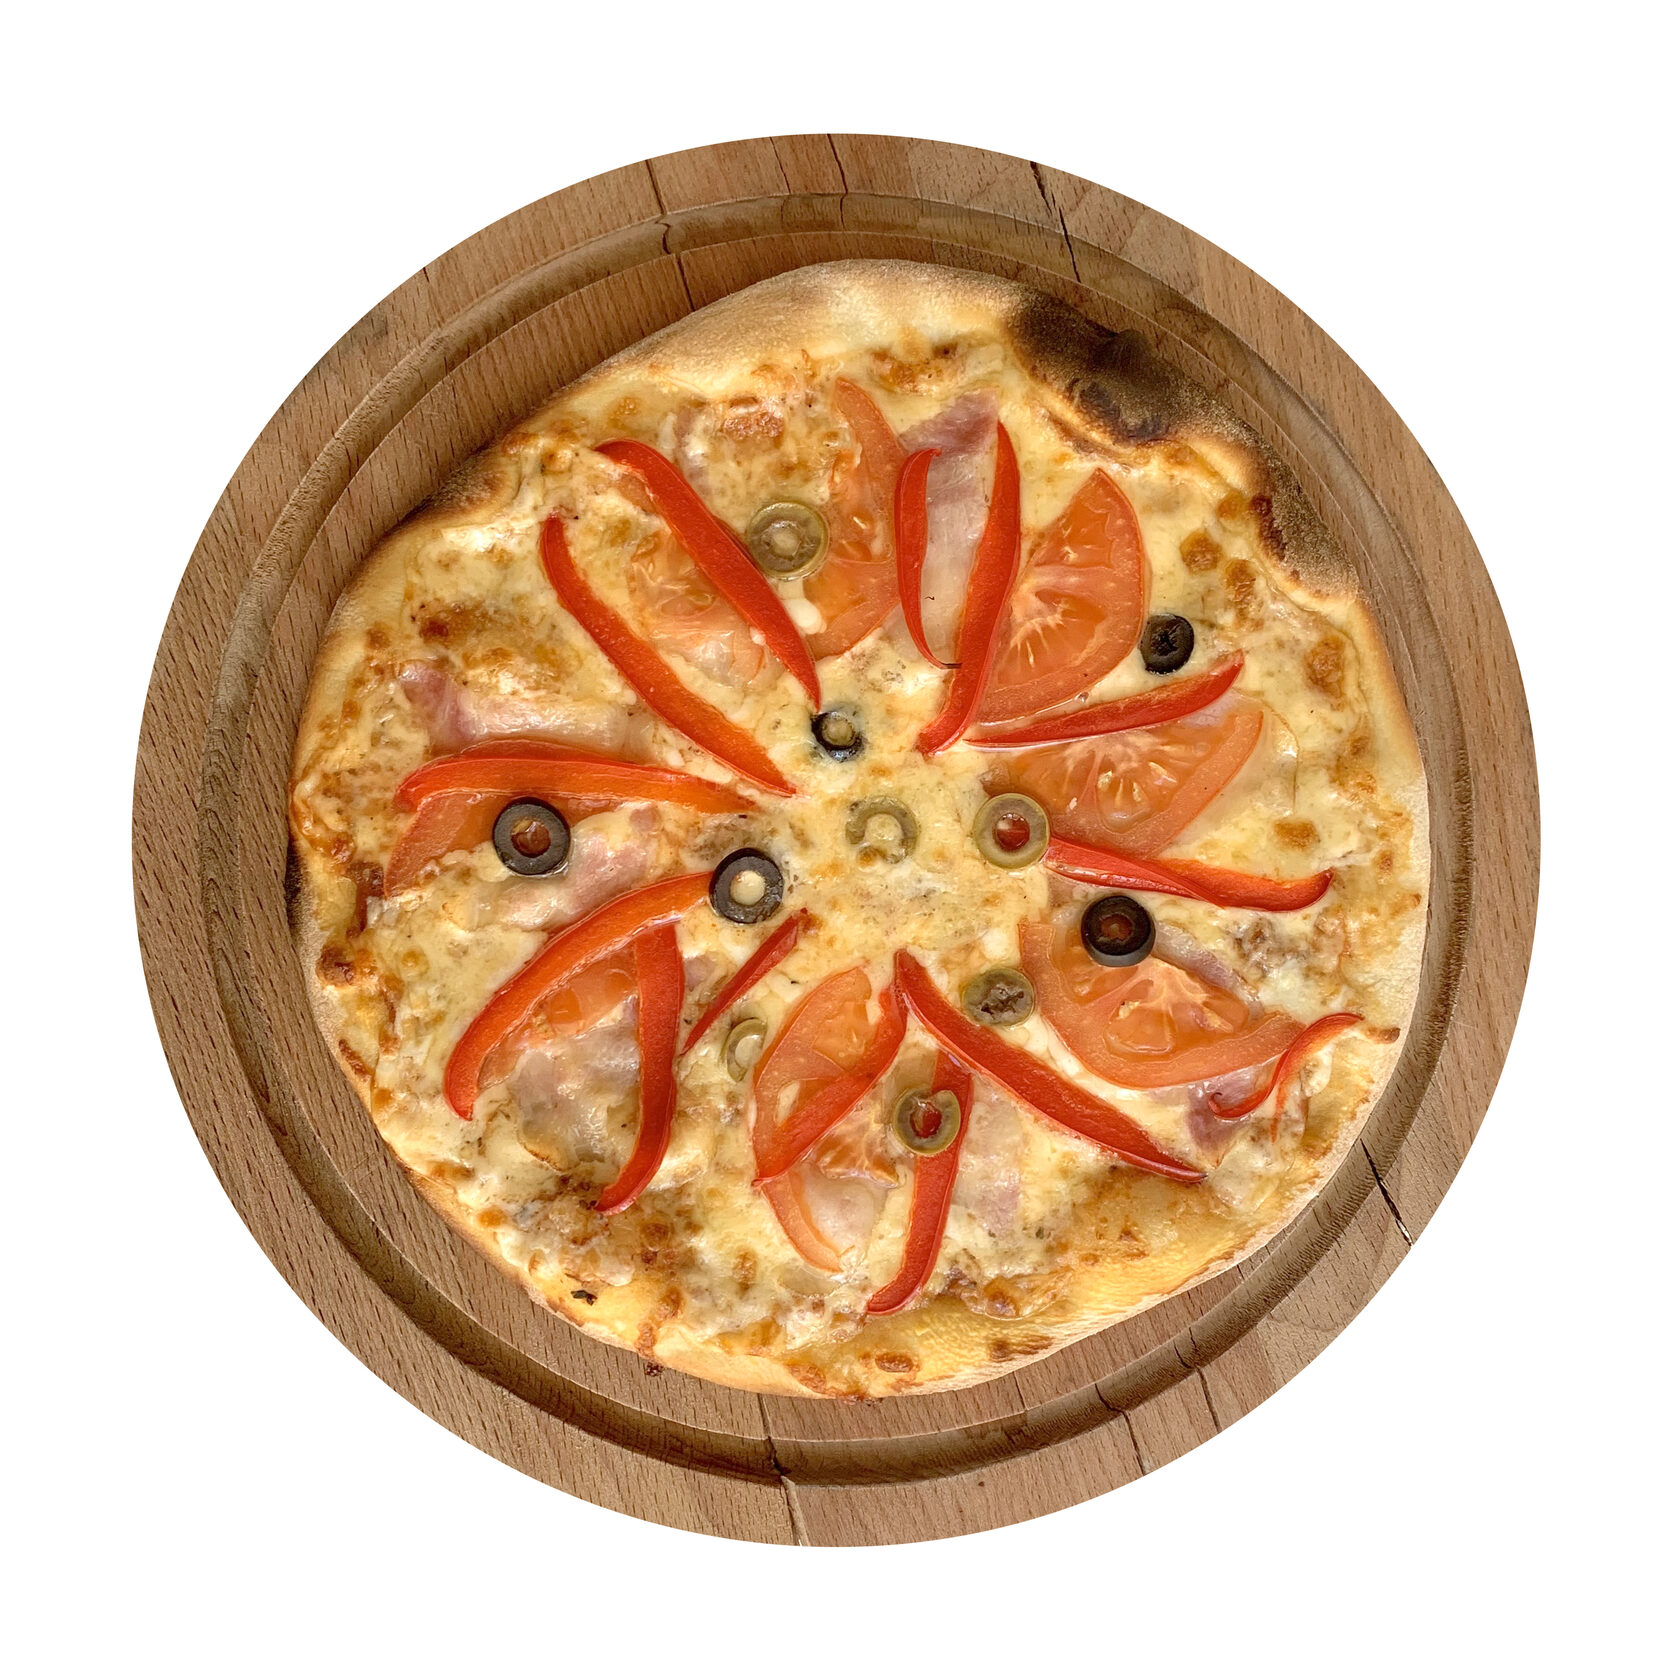 фирменный томатный соус для пиццы фото 96